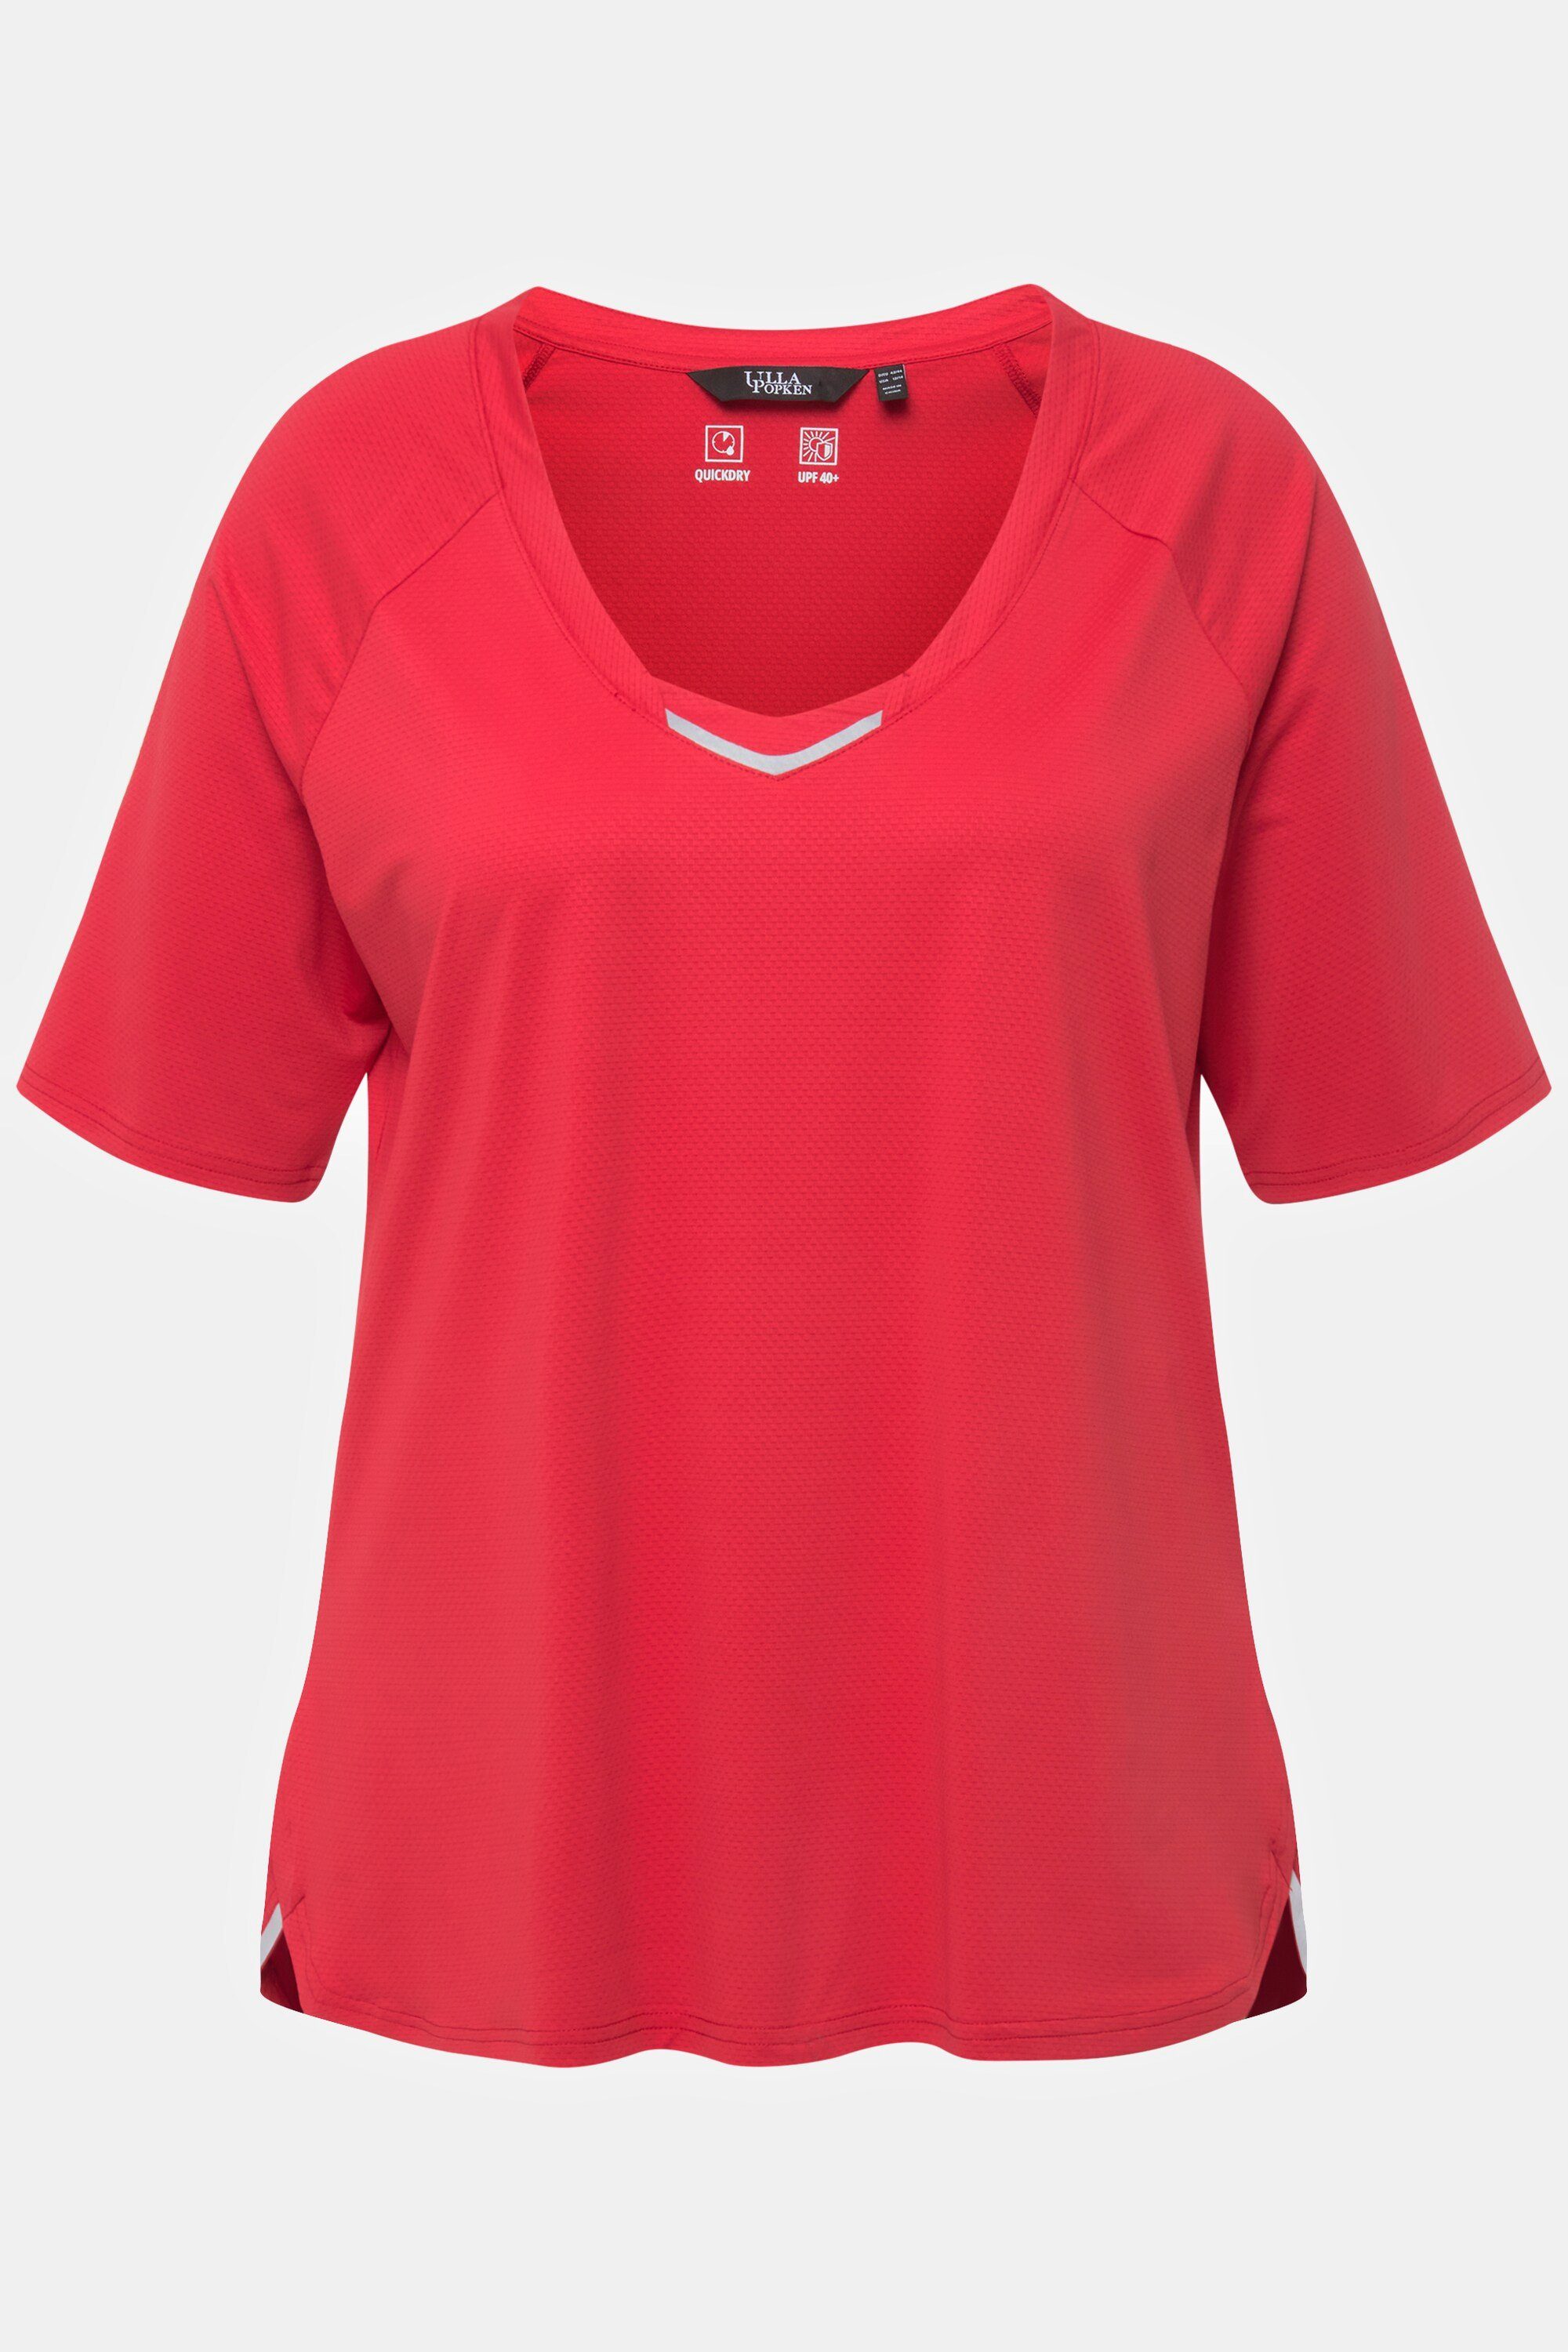 Popken Ulla Halbarm helle UV-Schutz T-Shirt erdbeere V-Ausschnitt Rundhalsshirt 40+